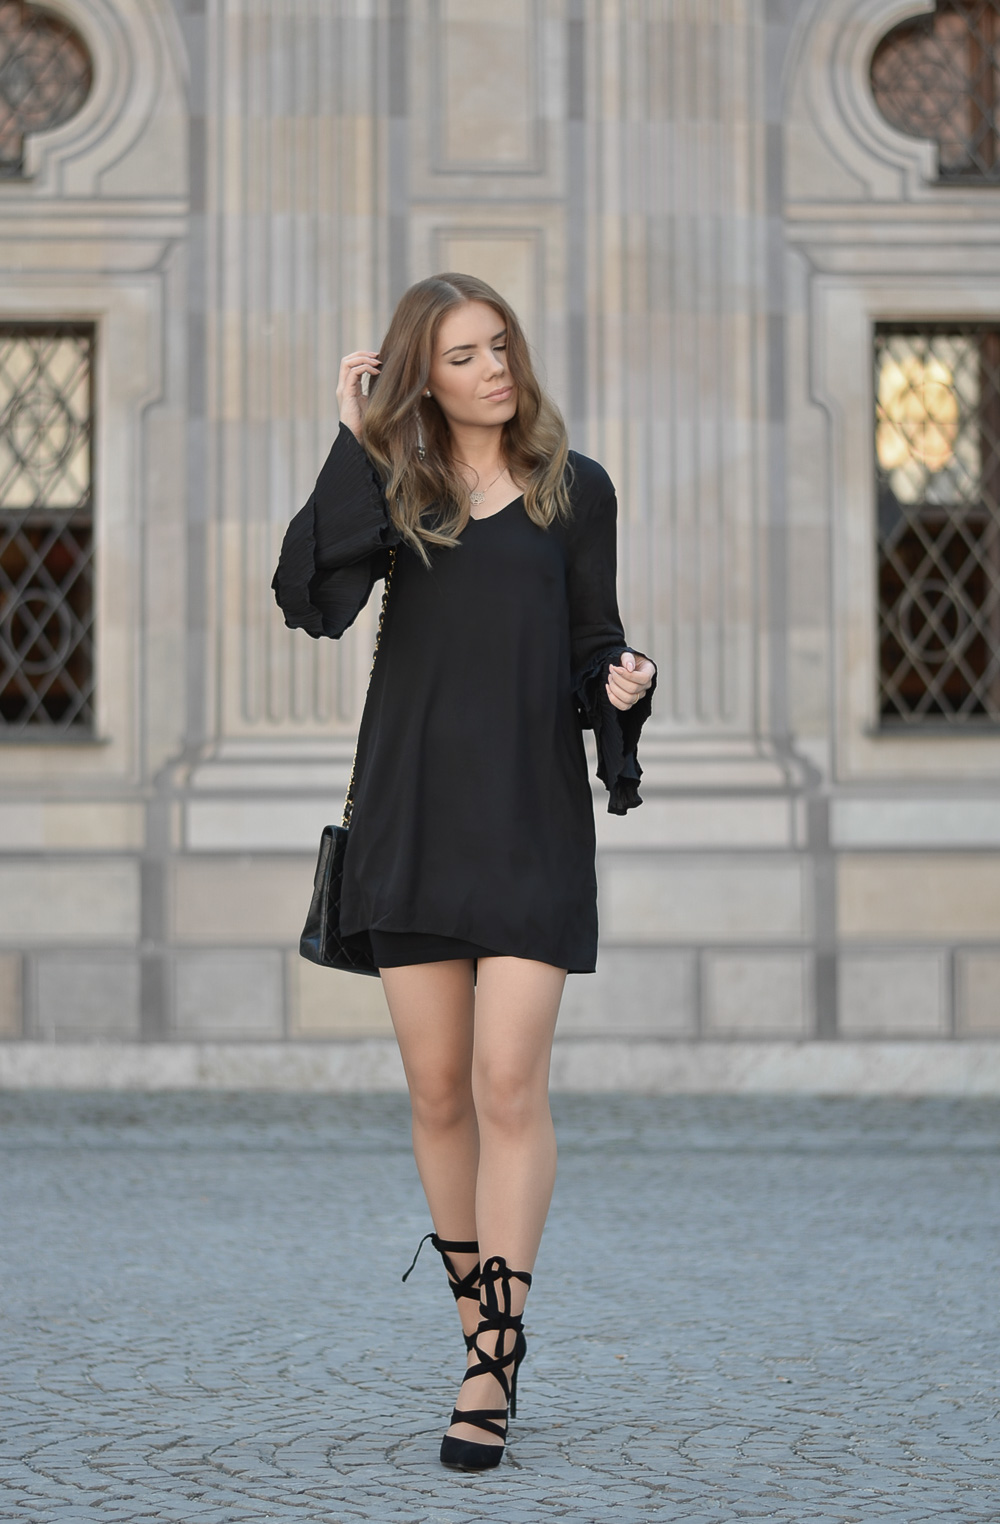 Fashion-Schwarzes Sommerkleid mit Plisset Ärmeln-Chanel Tasche-geschnürte Pumps